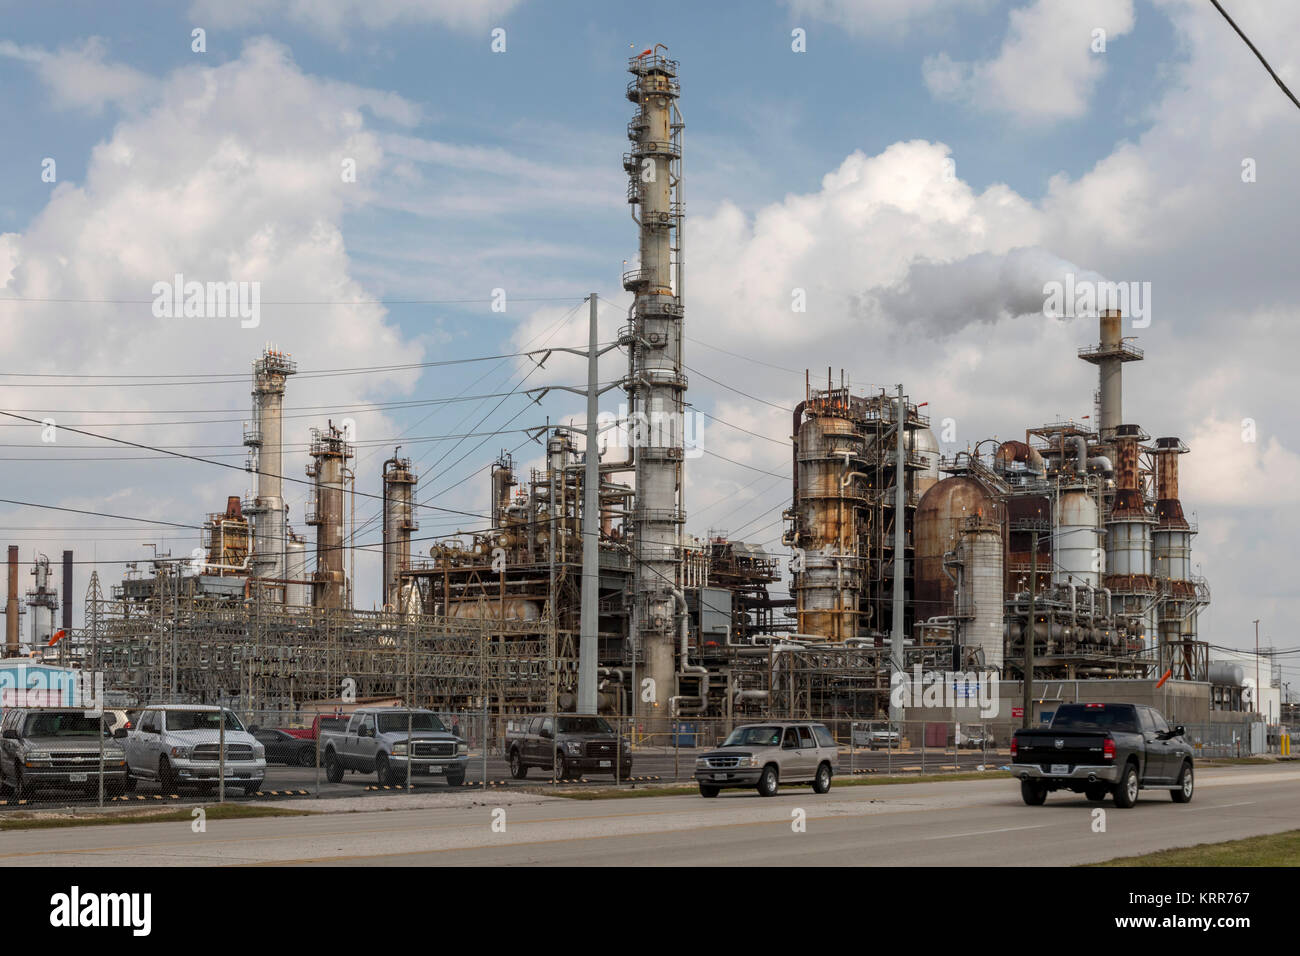 Houston, Texas - la raffinerie LyondellBasell Houston. Les procédés de raffinage du pétrole brut à haute teneur en soufre. Banque D'Images